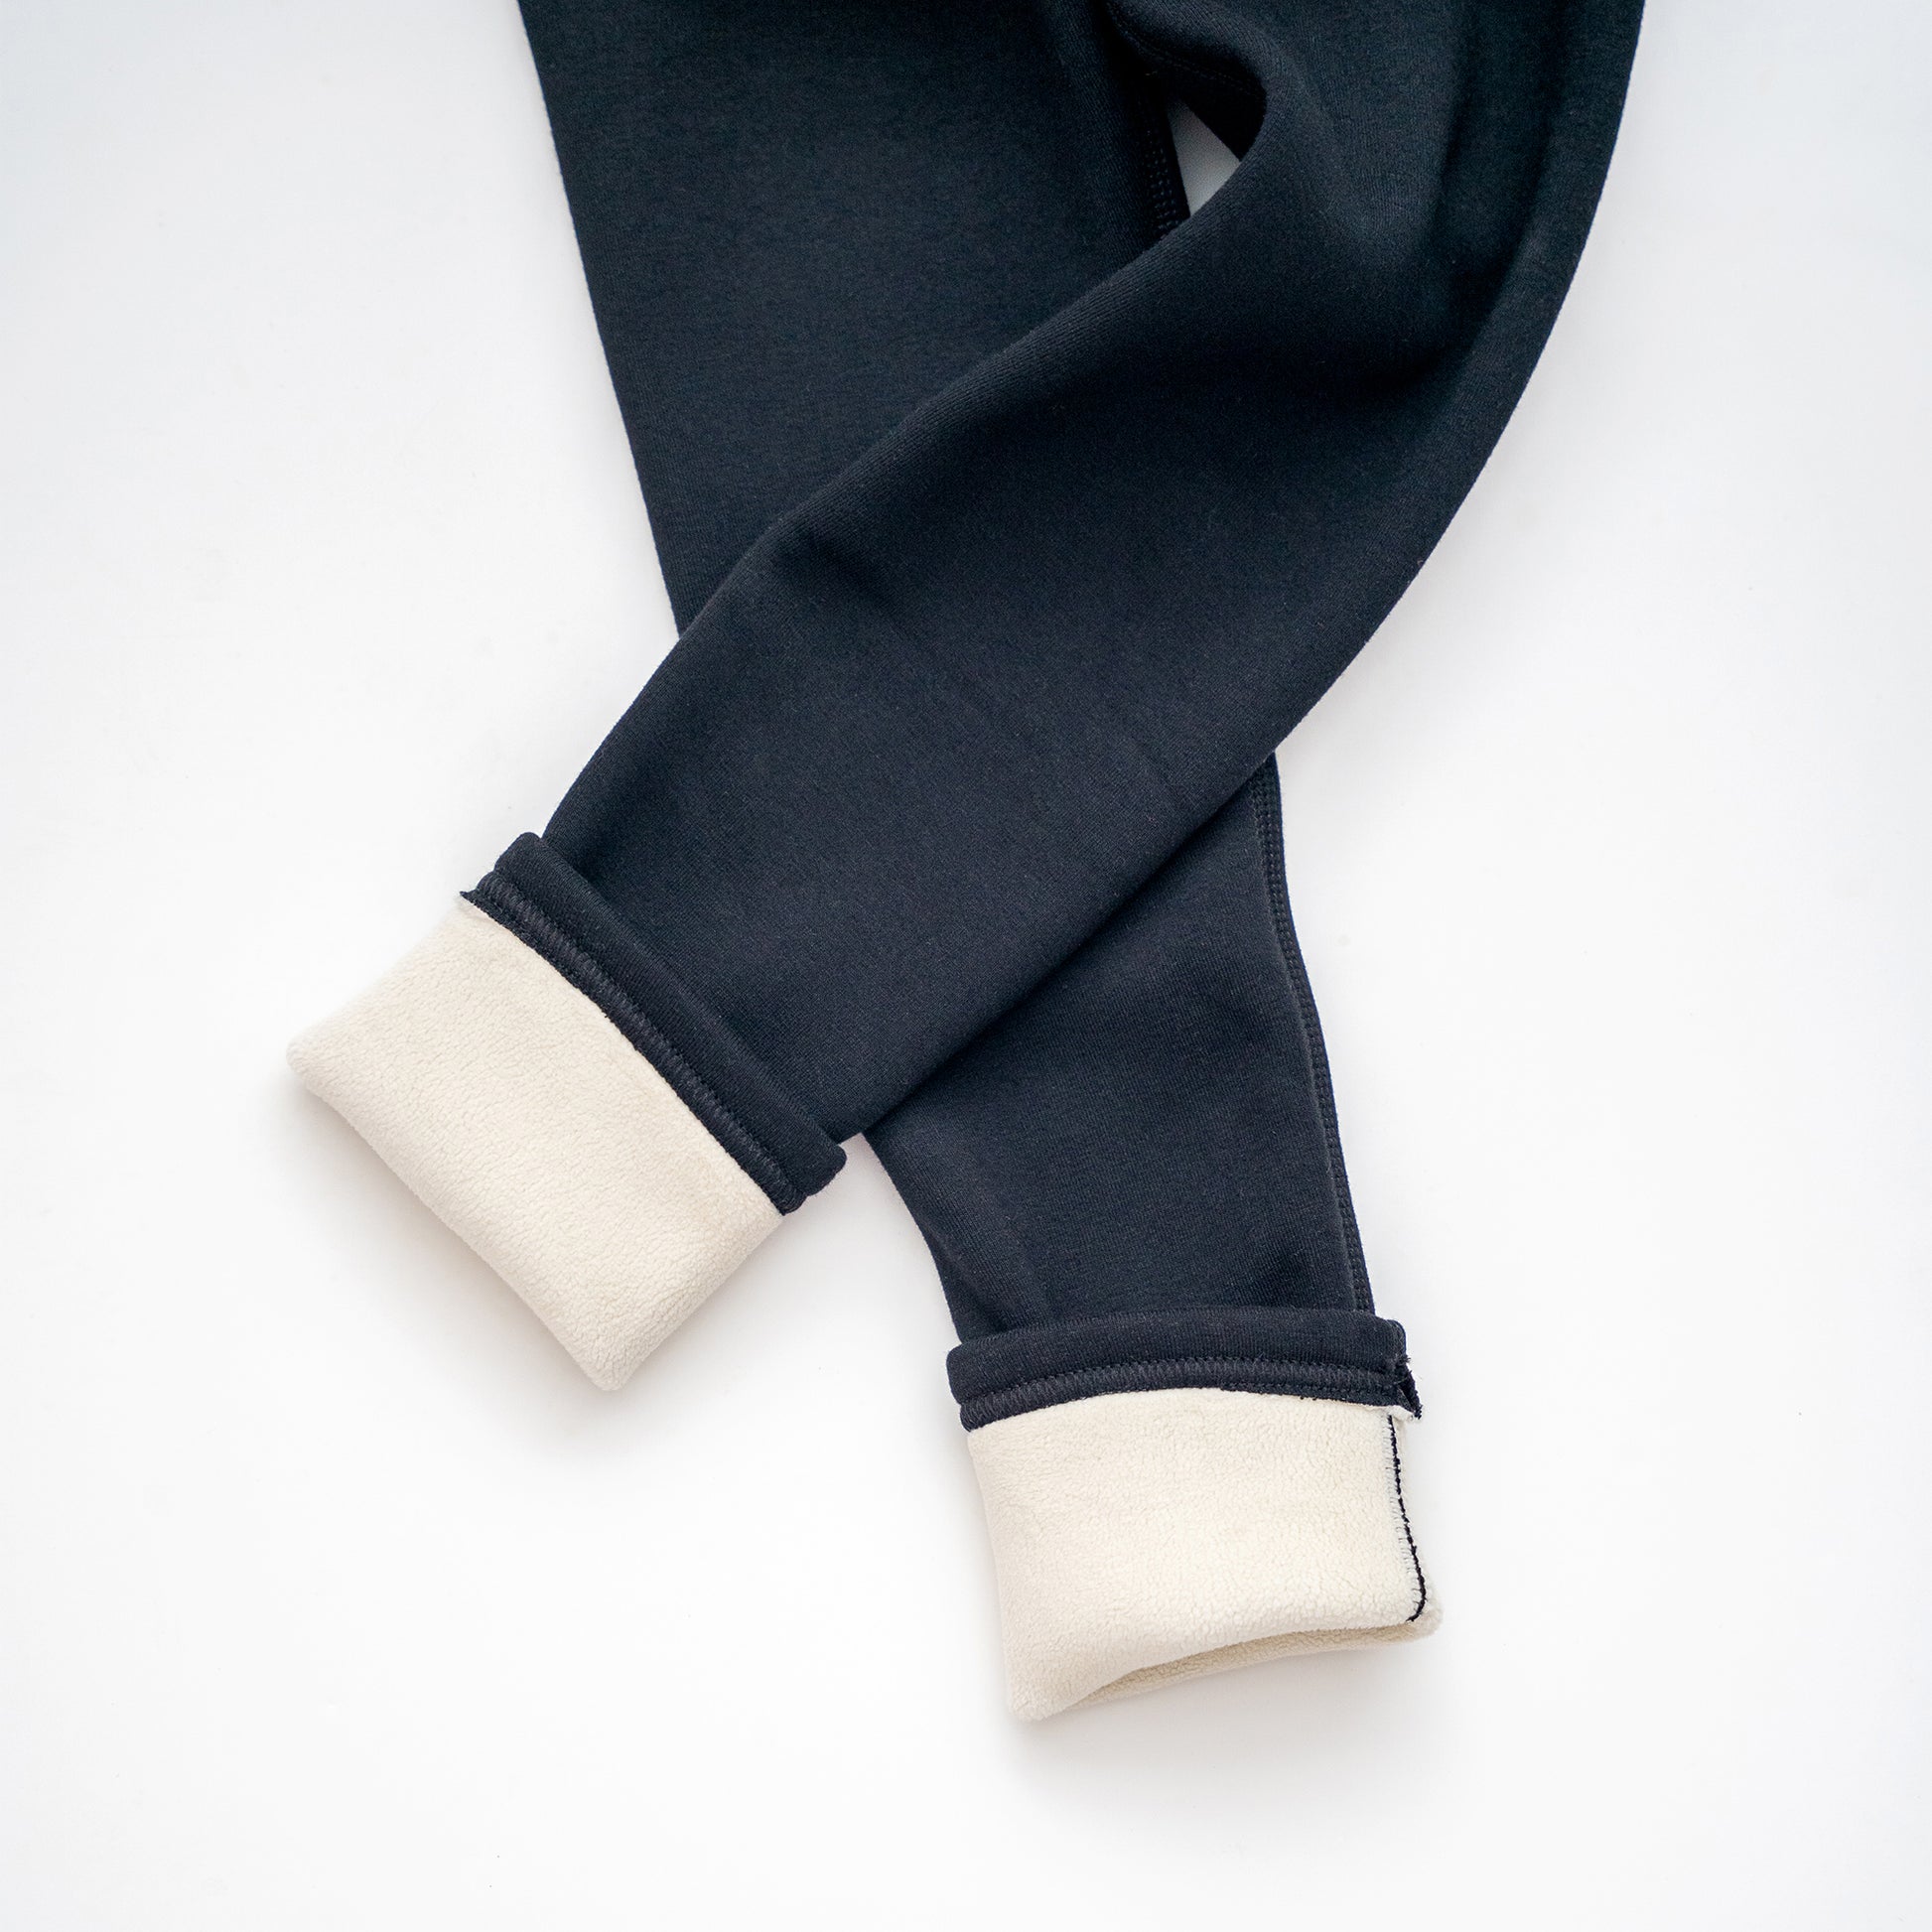 Black Kids' Thermal Fur-Lined School Uniform Leggings - Nora